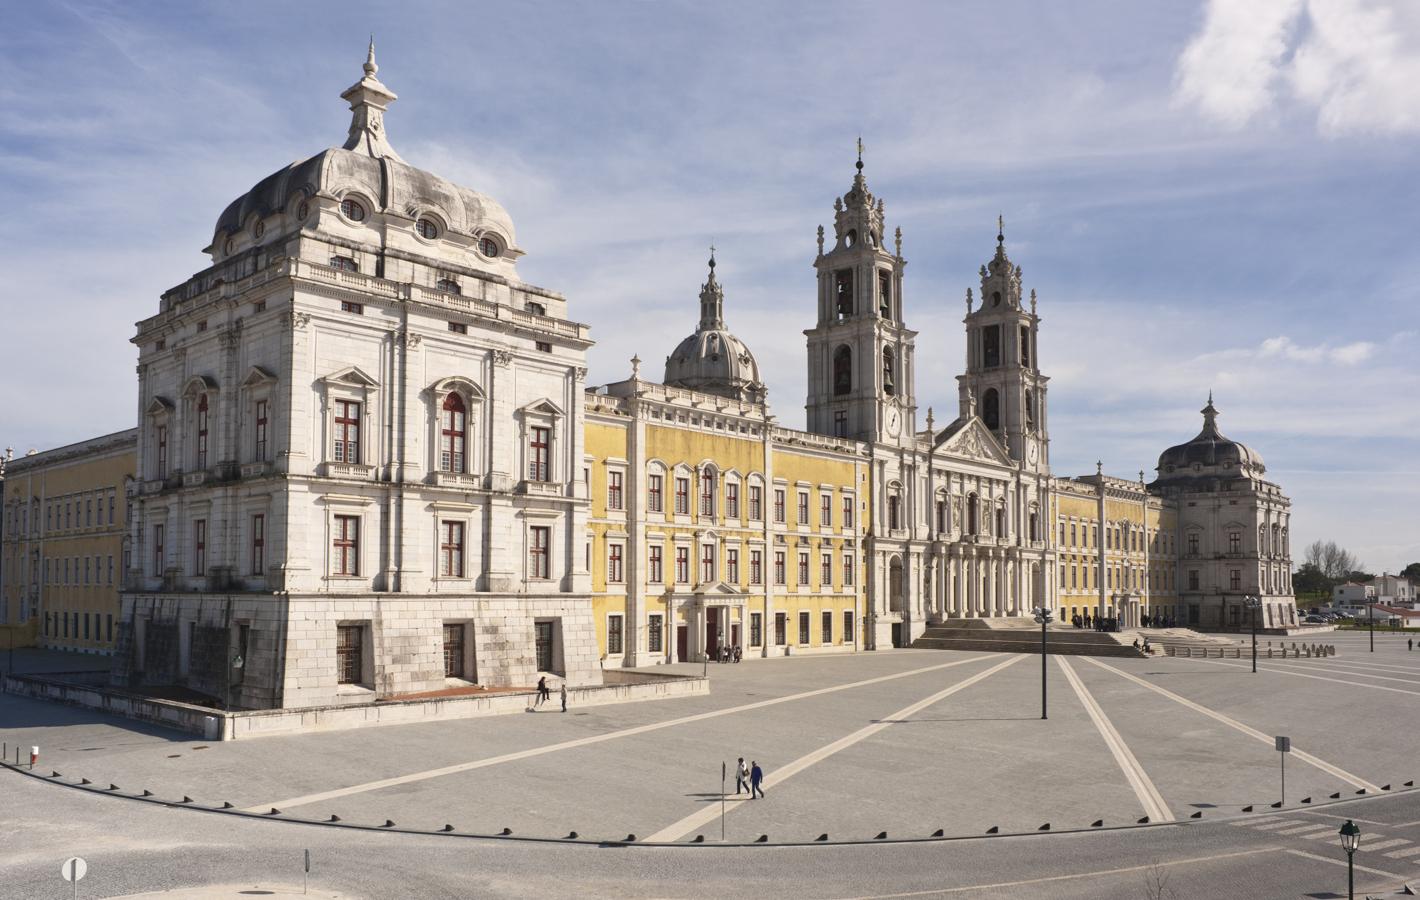 Palacio Nacional de Mafra (Portugal). Se encuentra entre las edificaciones del barroco portugués más suntuosas. El palacio fue construido a través de seis ejes simétricos, dos torres y una basílica central. El monasterio incluye una importantísima biblioteca con un fondo de 30.000 libros raros.